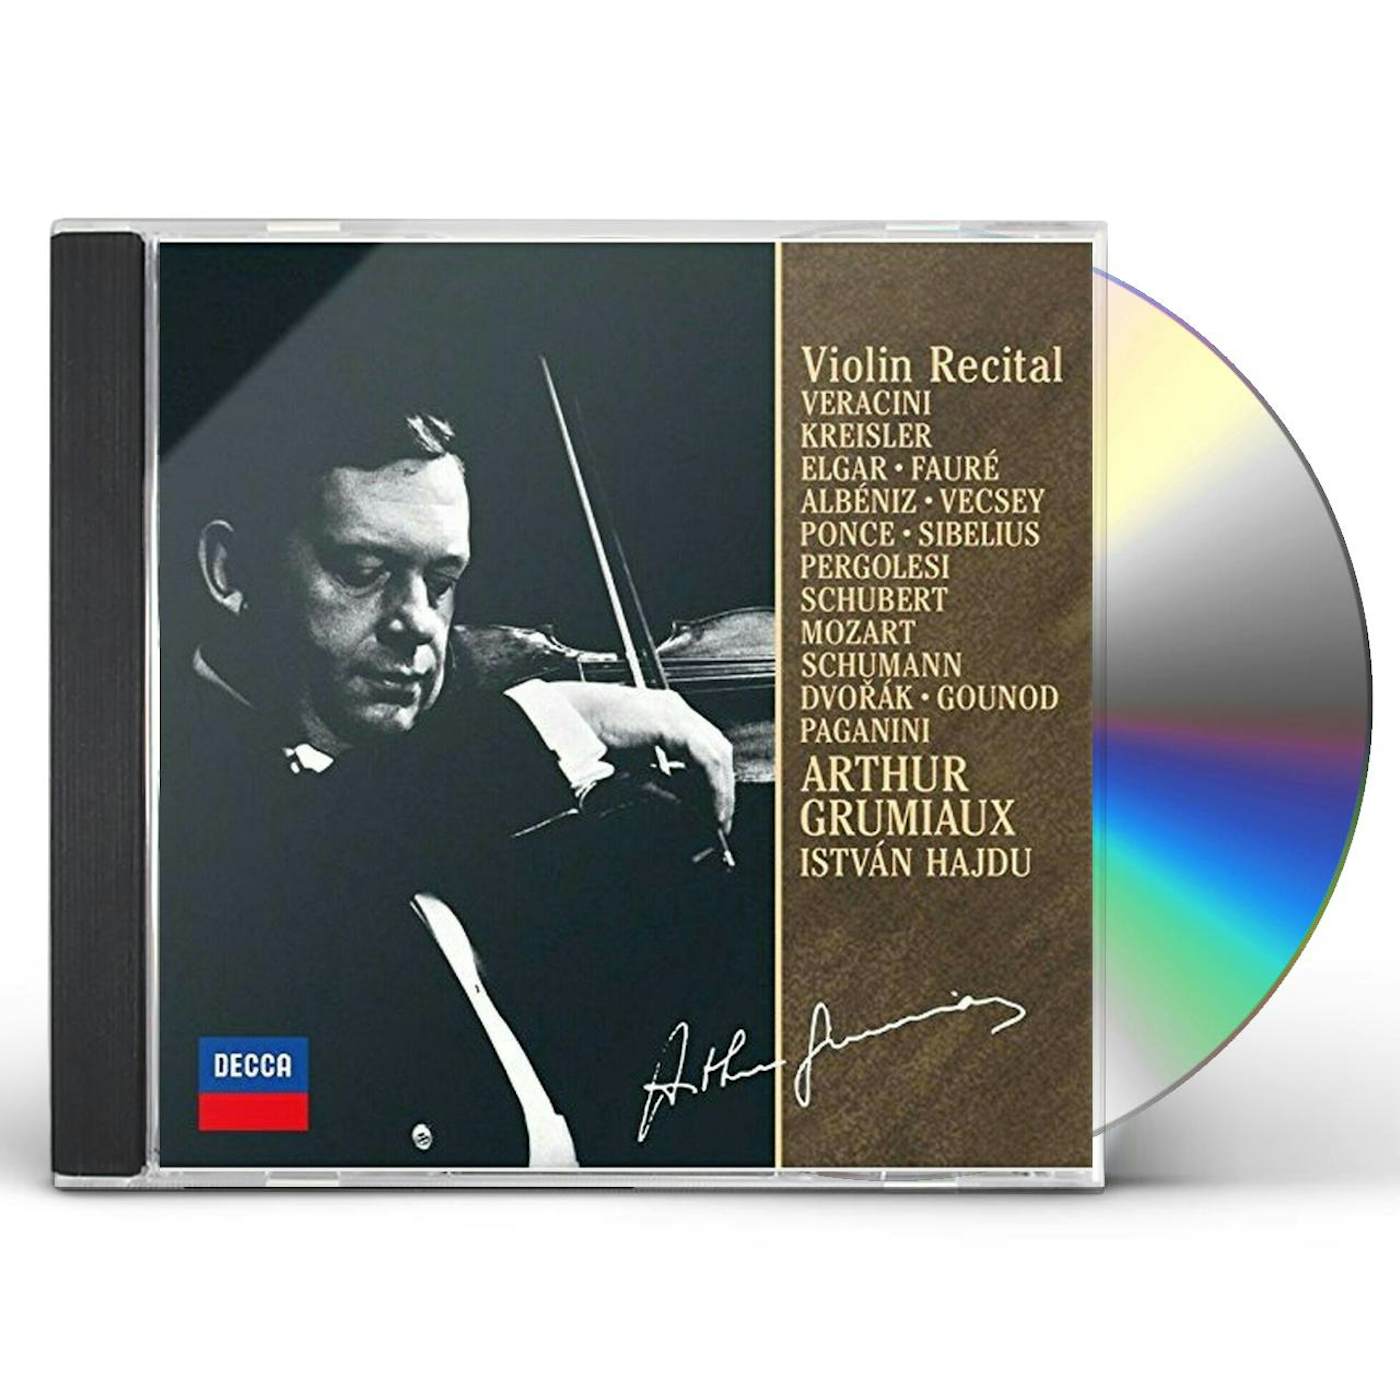 Arthur Grumiaux APRES UN REVE: VIOLIN RECITAL 3 CD